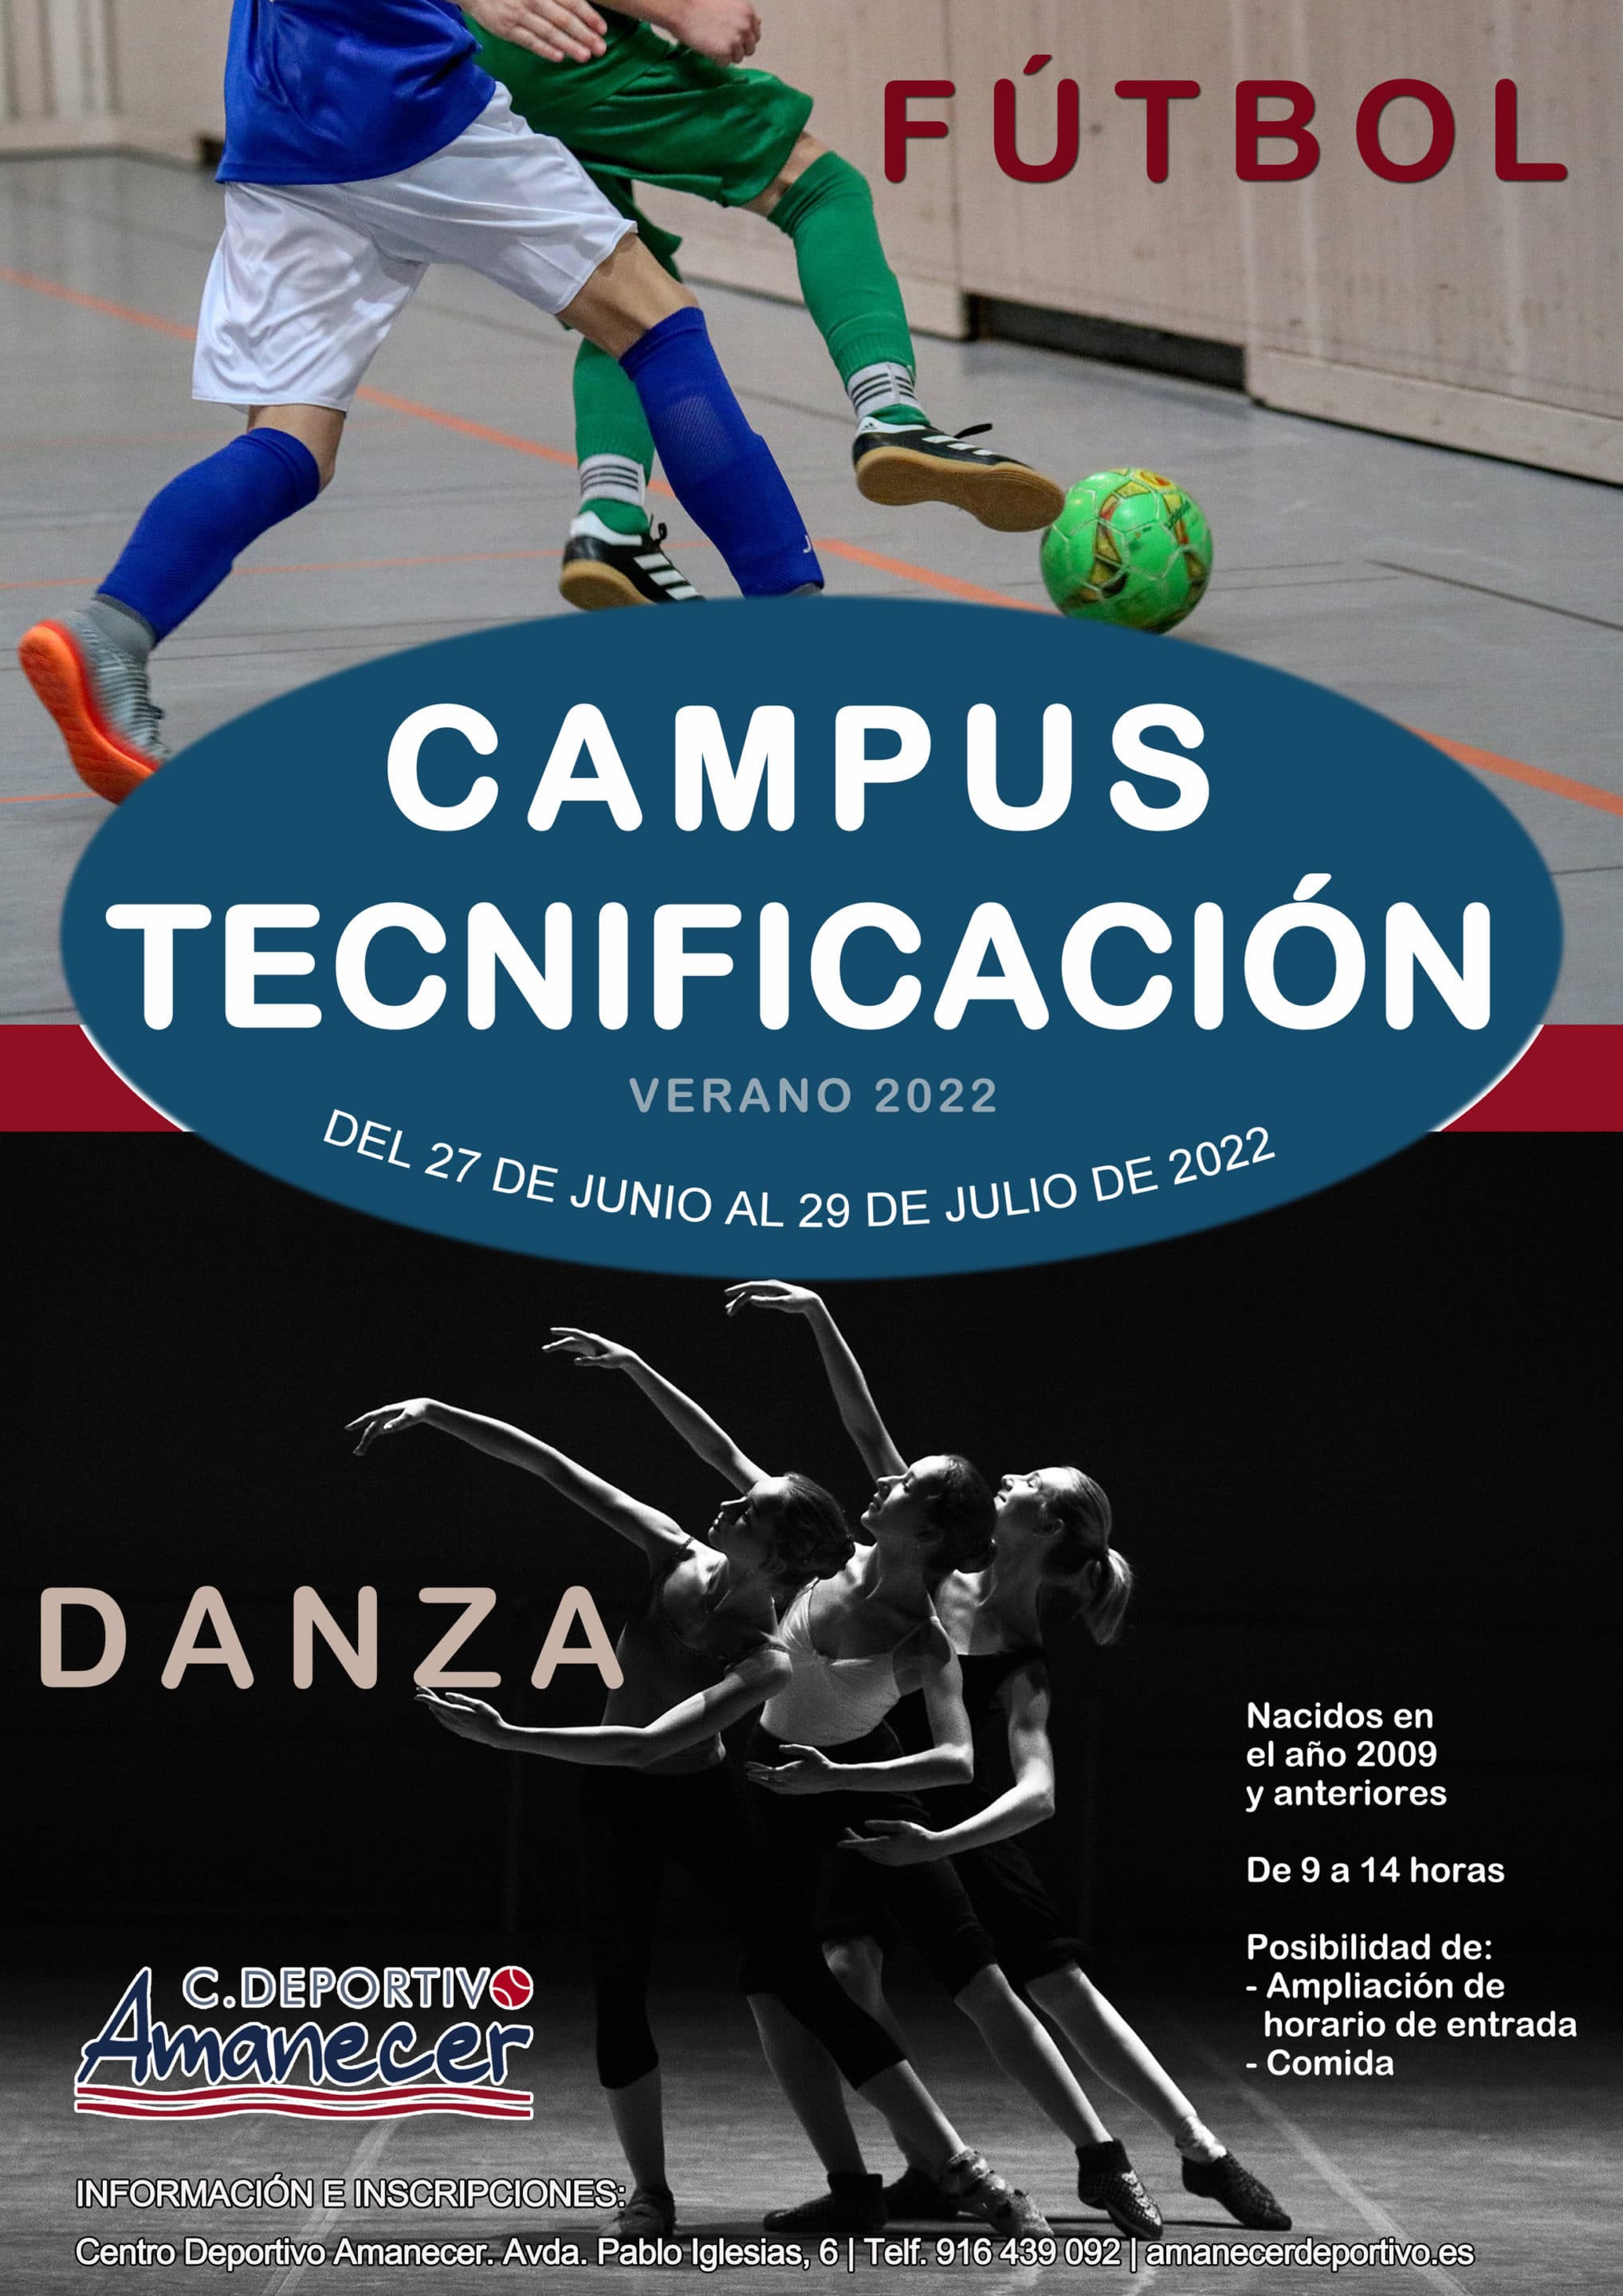 Campamentos verano Alcorcón - Campus tecnificación